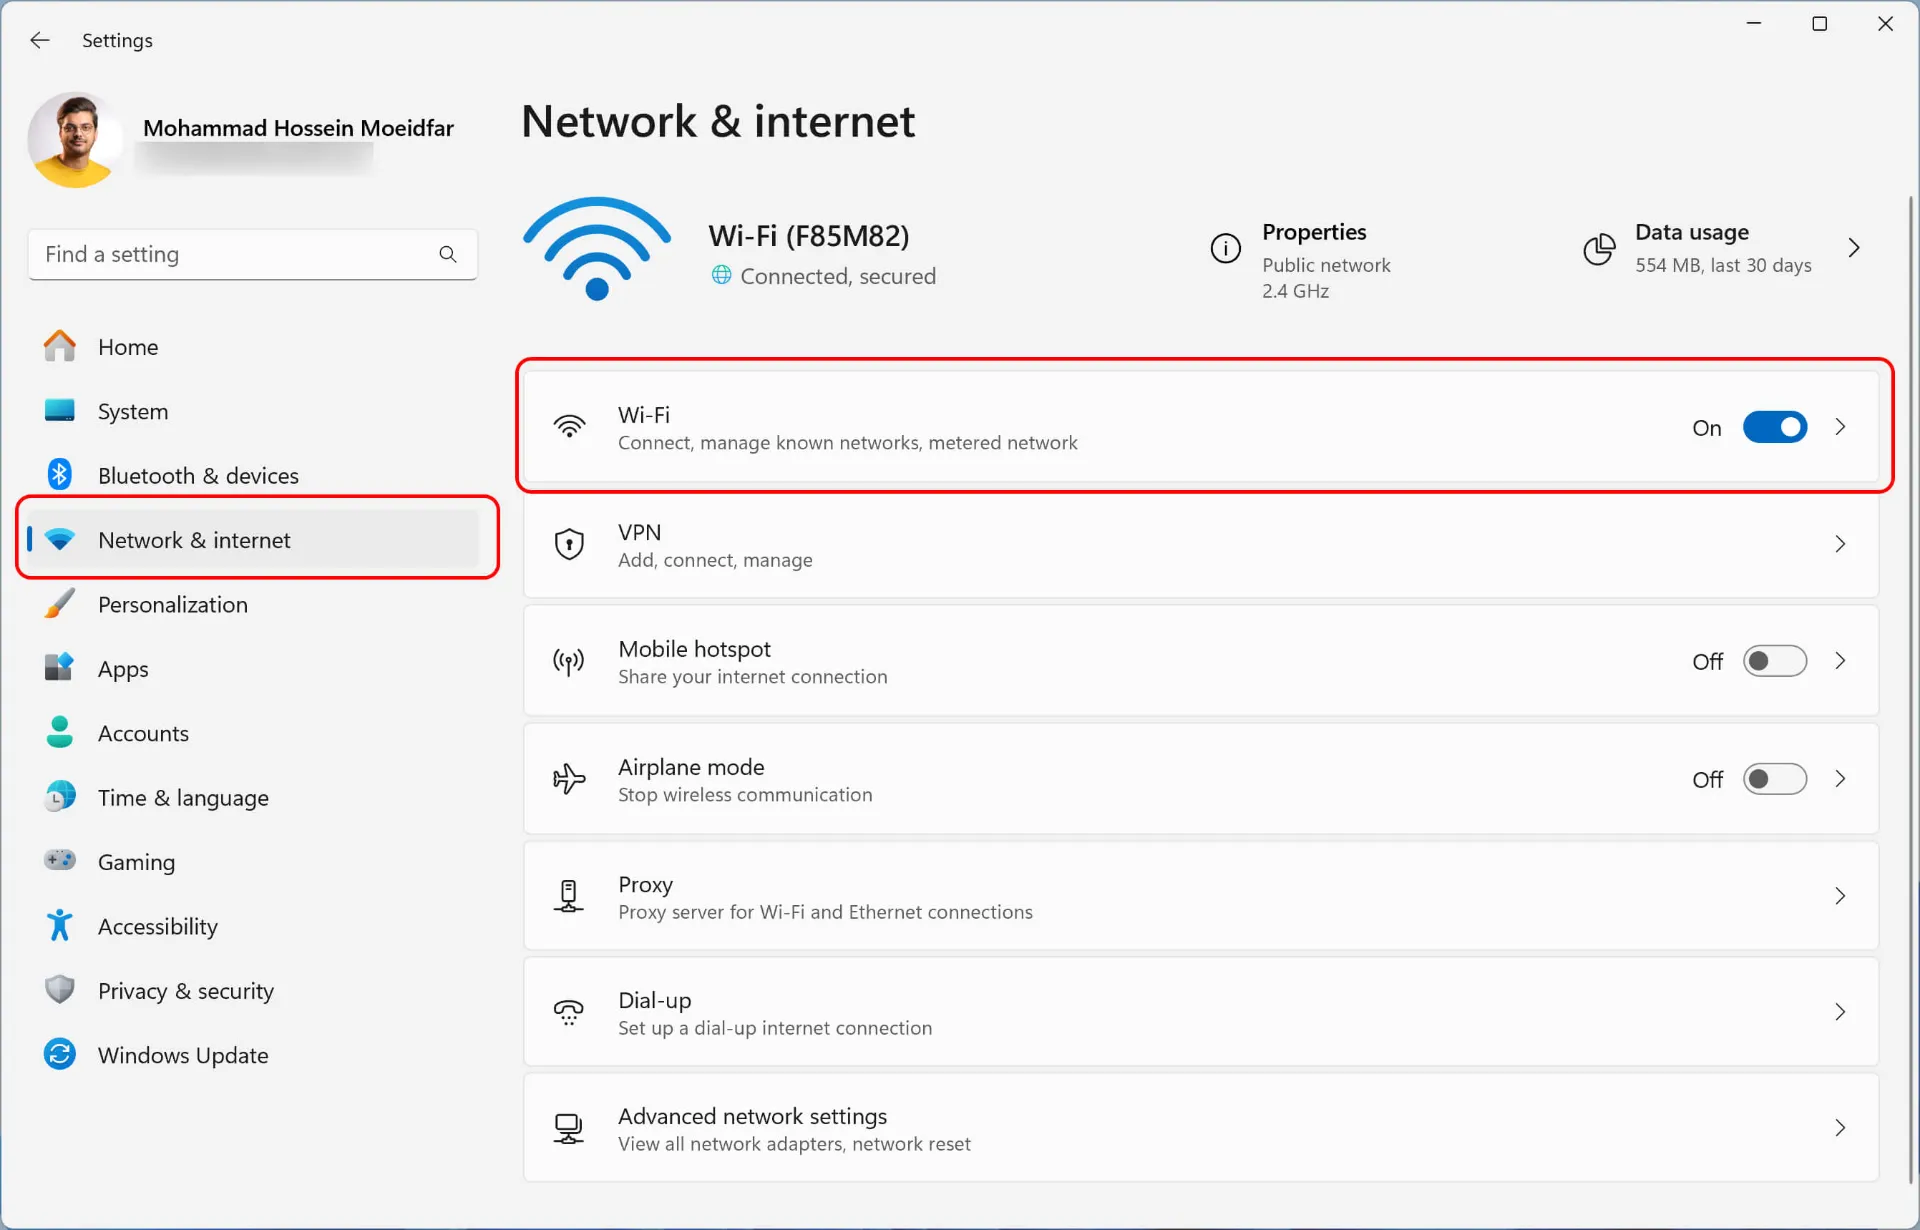 بازکردن تنظیمات (Settings) در ویندوز ۱۱ و انتخاب Network & internet